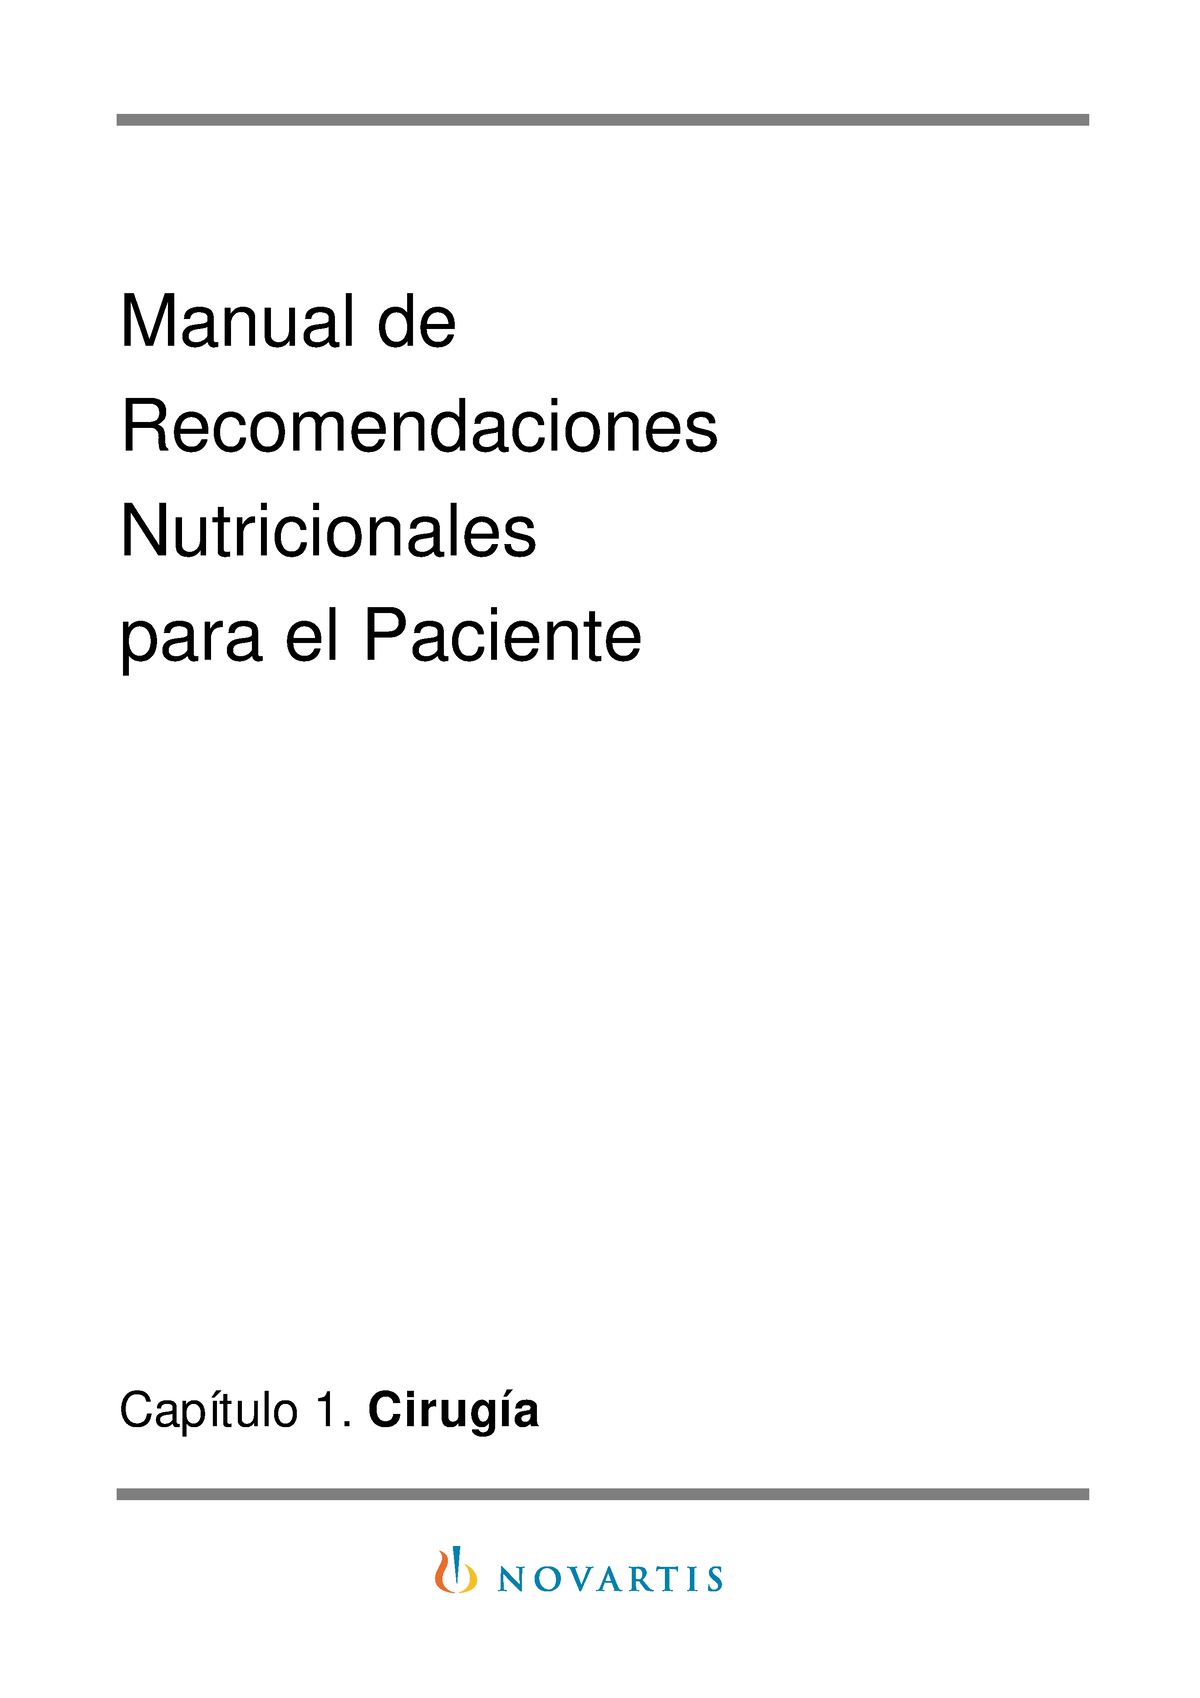 Manual Recomendaciones Nutricionales Manual De Recomendaciones Nutricionales Para El Paciente 1828